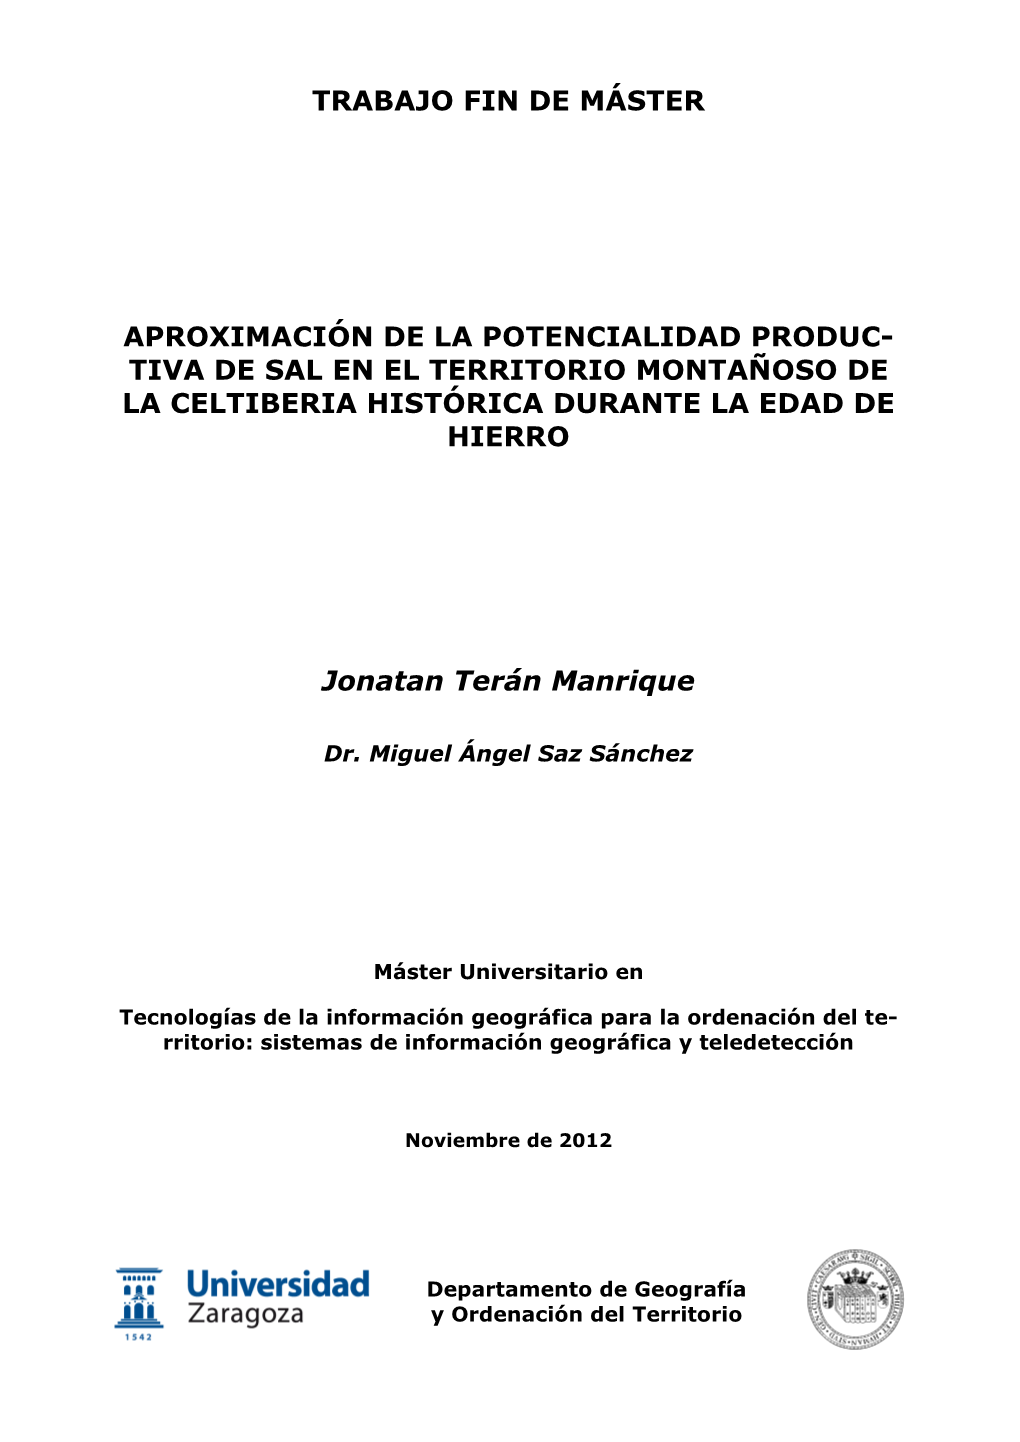 Tiva De Sal En El Territorio Montañoso De La Celtiberia Histórica Durante La Edad De Hierro